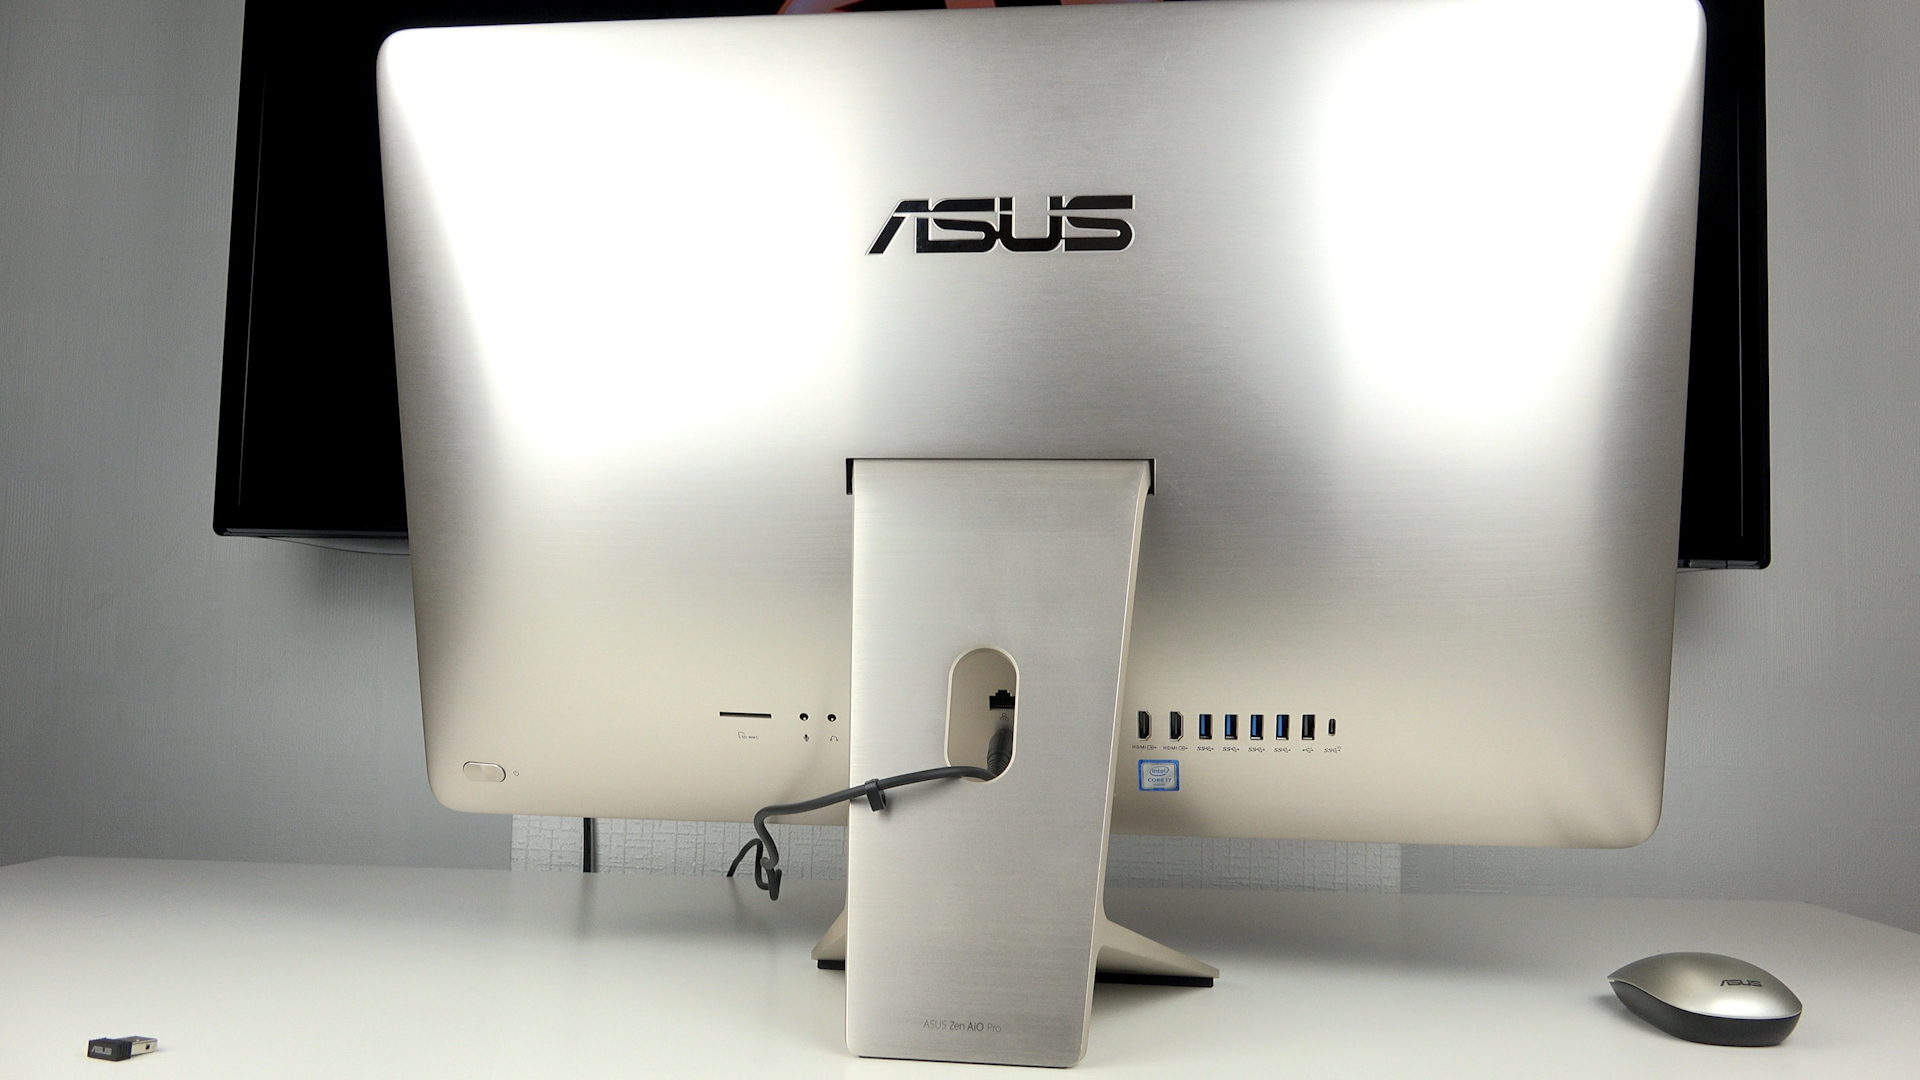 Asus Zen AIO Pro incelemesi 'Tasarımıyla donanımıyla iMac'e ciddi rakip'